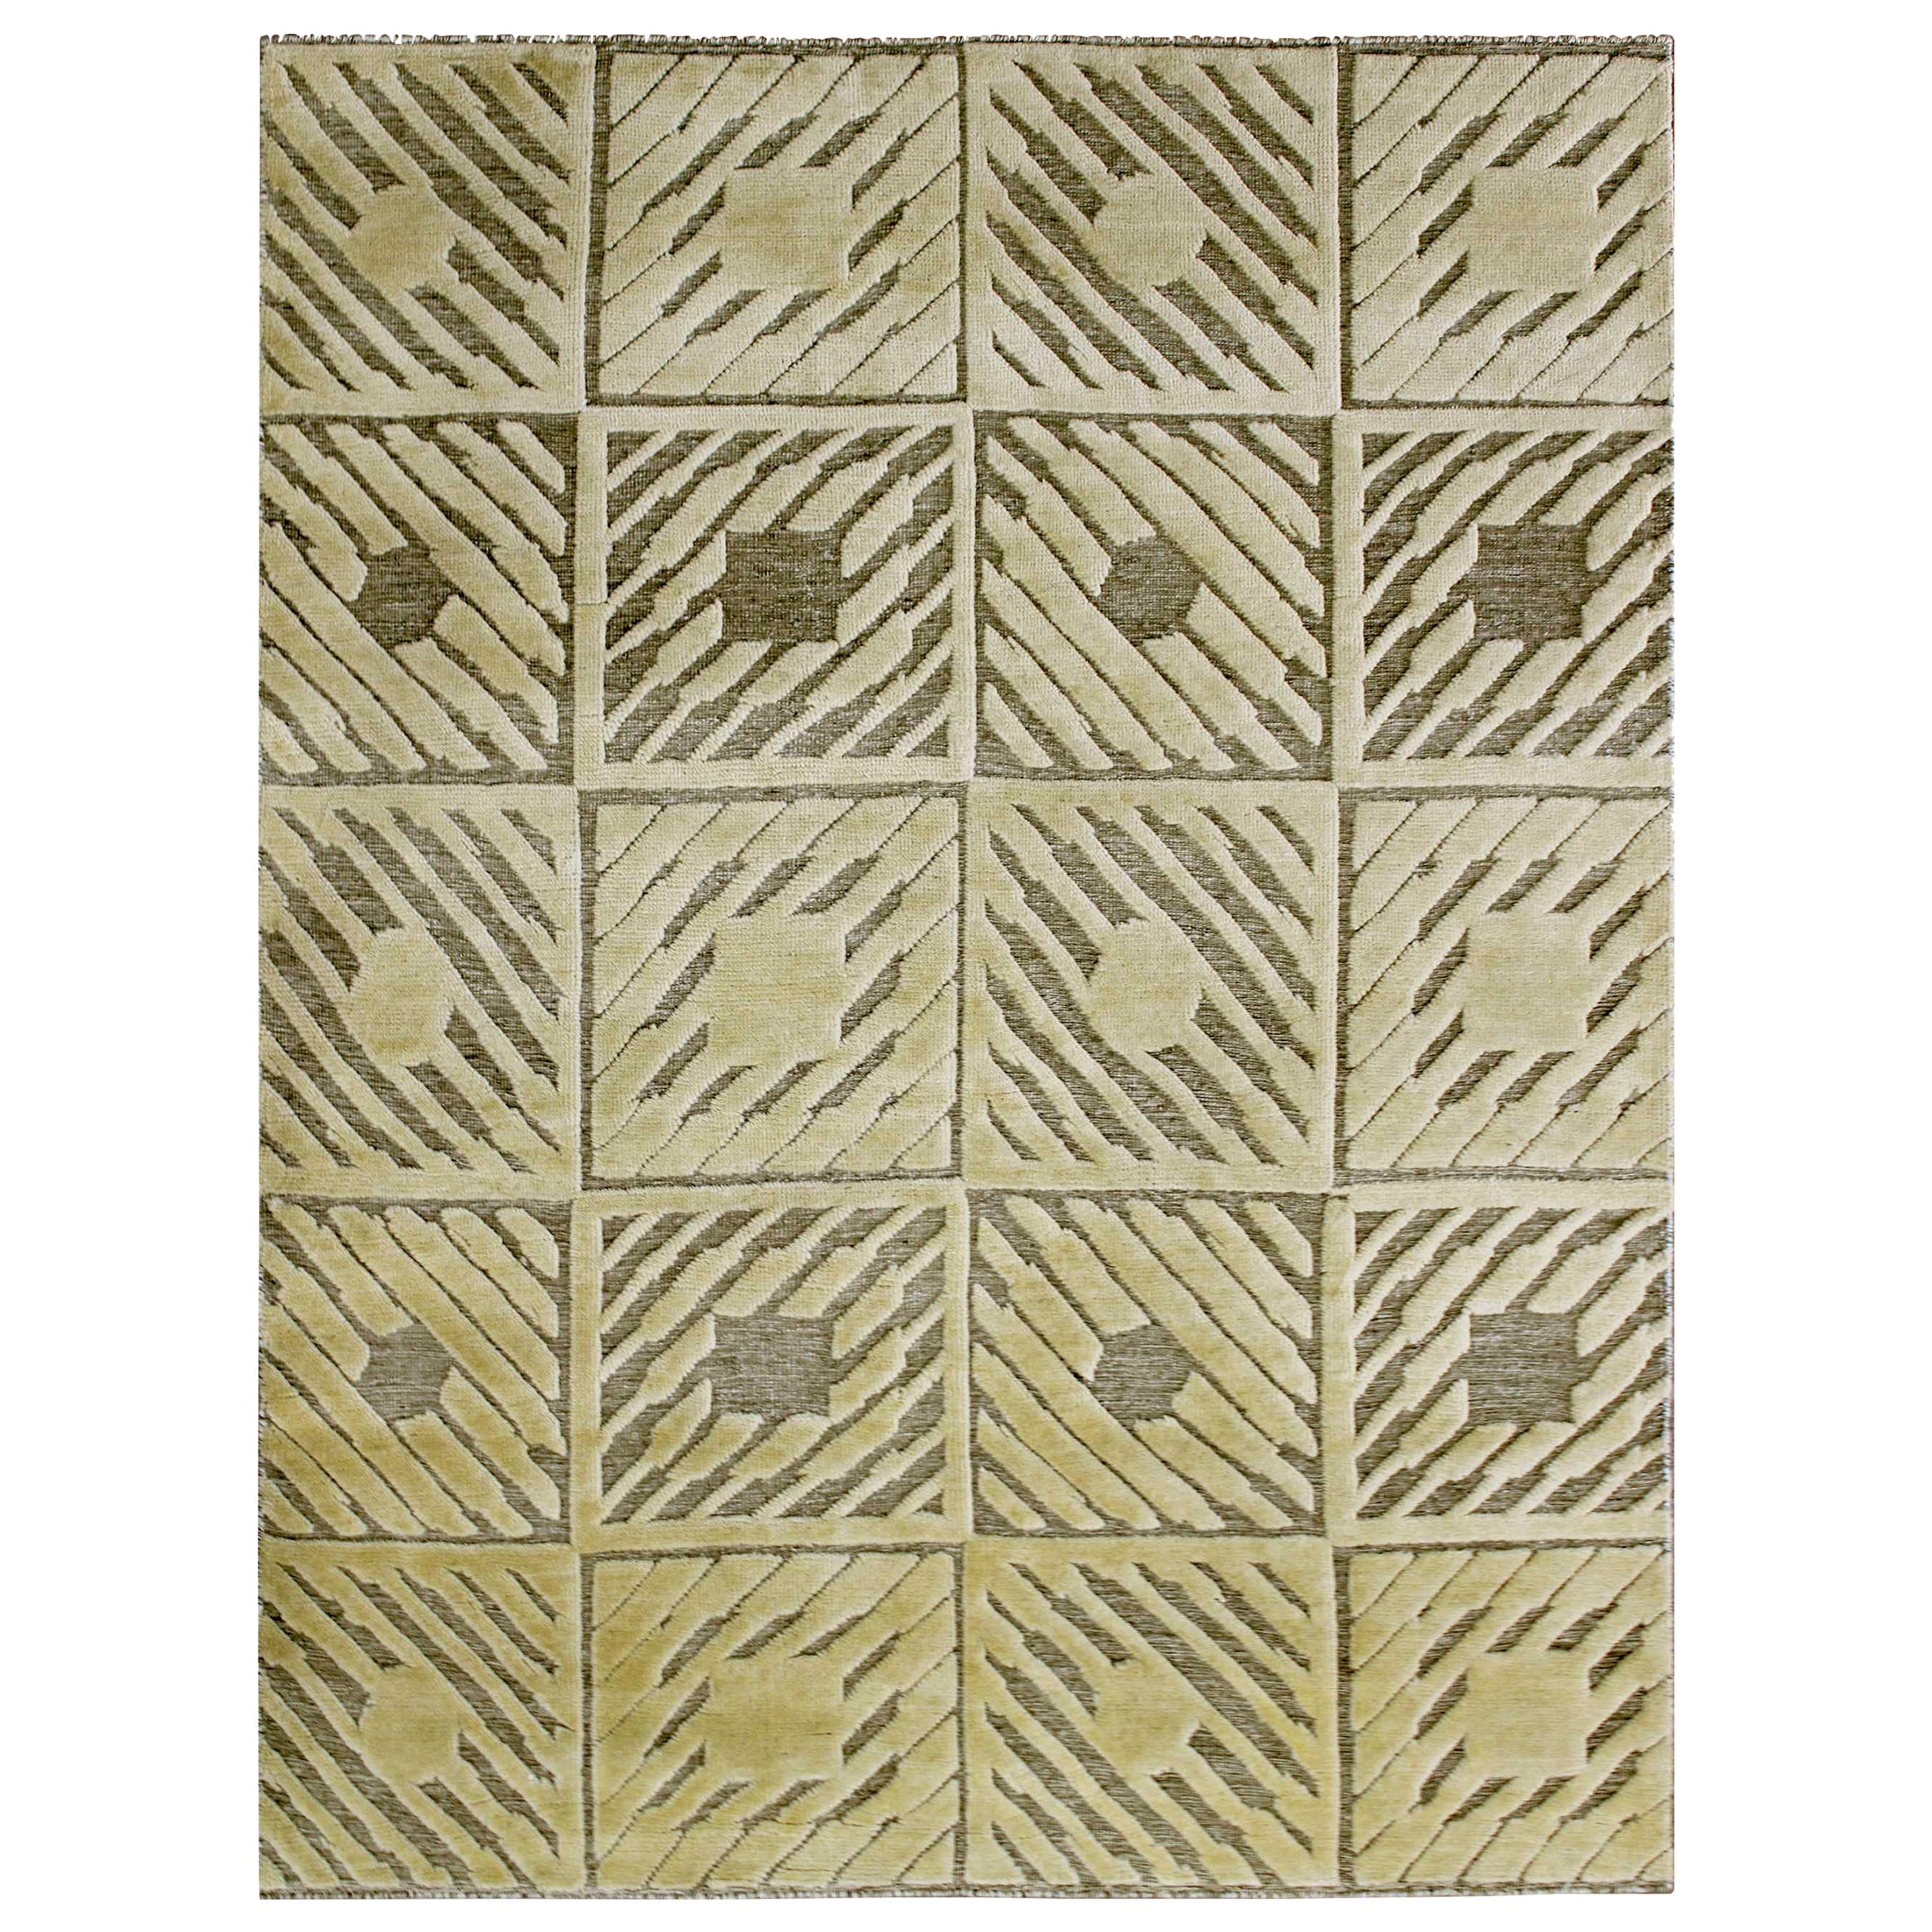 Neuer Cameron Kollektion-Teppich aus der Cameron Kollektion mit modernen Designmustern und Farben